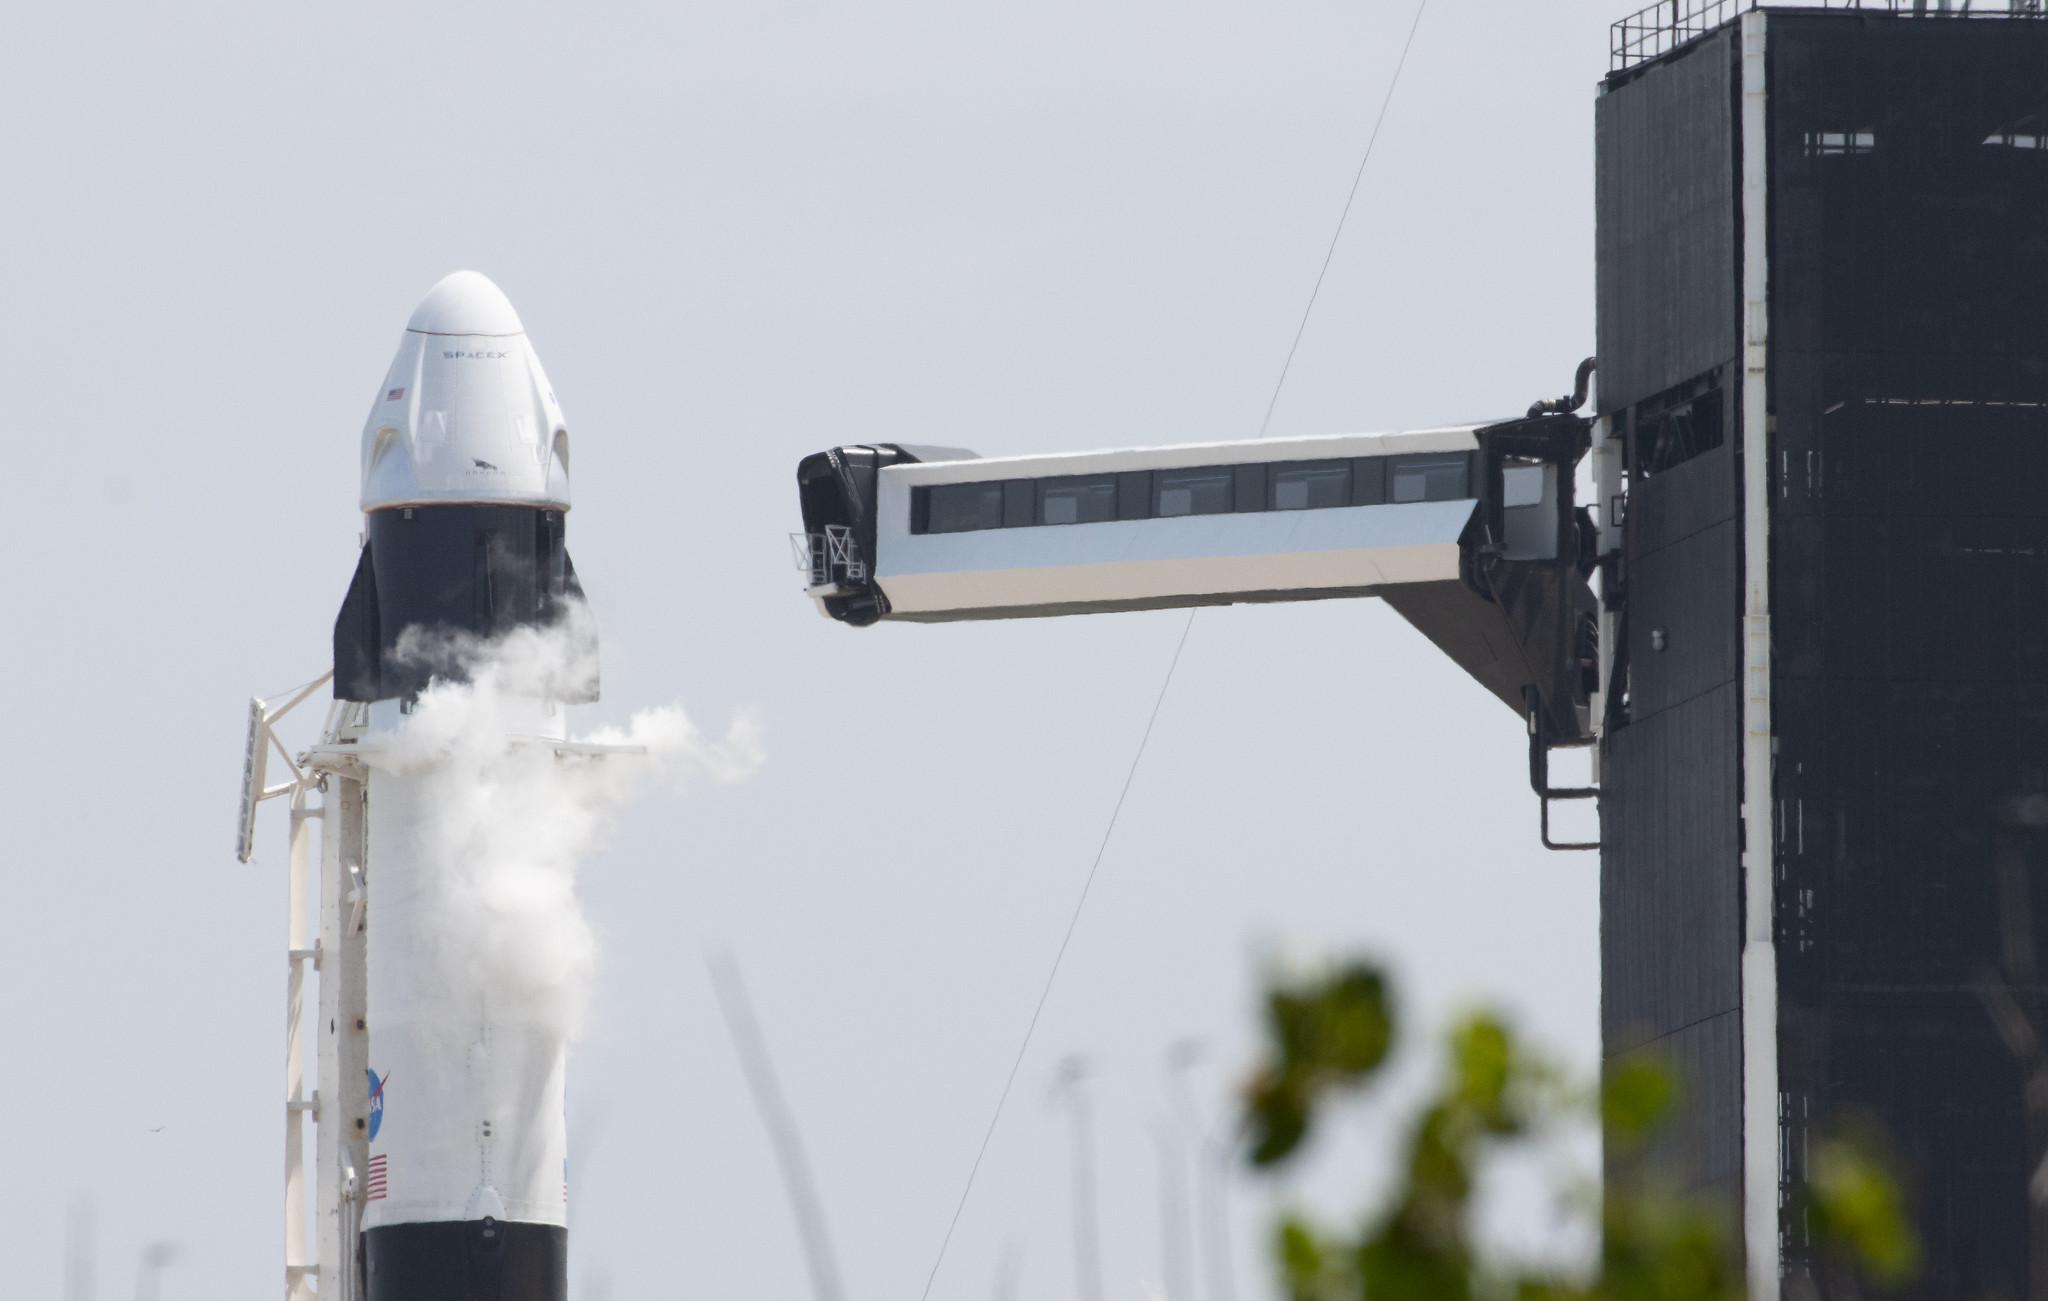 Hurley Velkrö Erste Launch Nasa Gewerblich Programm Spacex Drache Behnken 